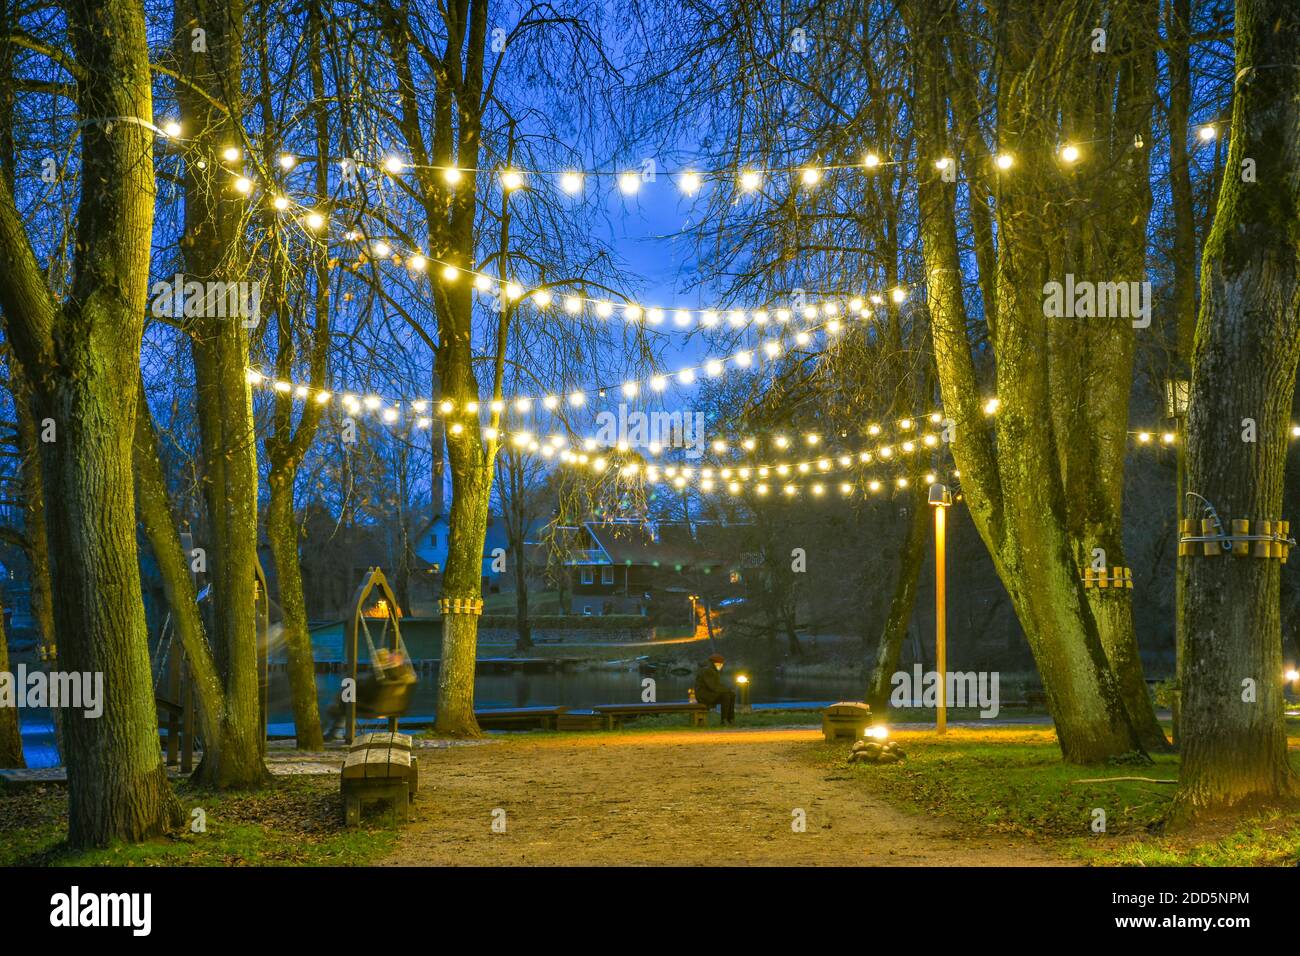 Park oder Garten mit warmen Glühbirnen, Straßenlampen am Abend oder in der Nacht, dekorative Beleuchtung, Feier, gemütliche Weihnachtshintergrund Stockfoto